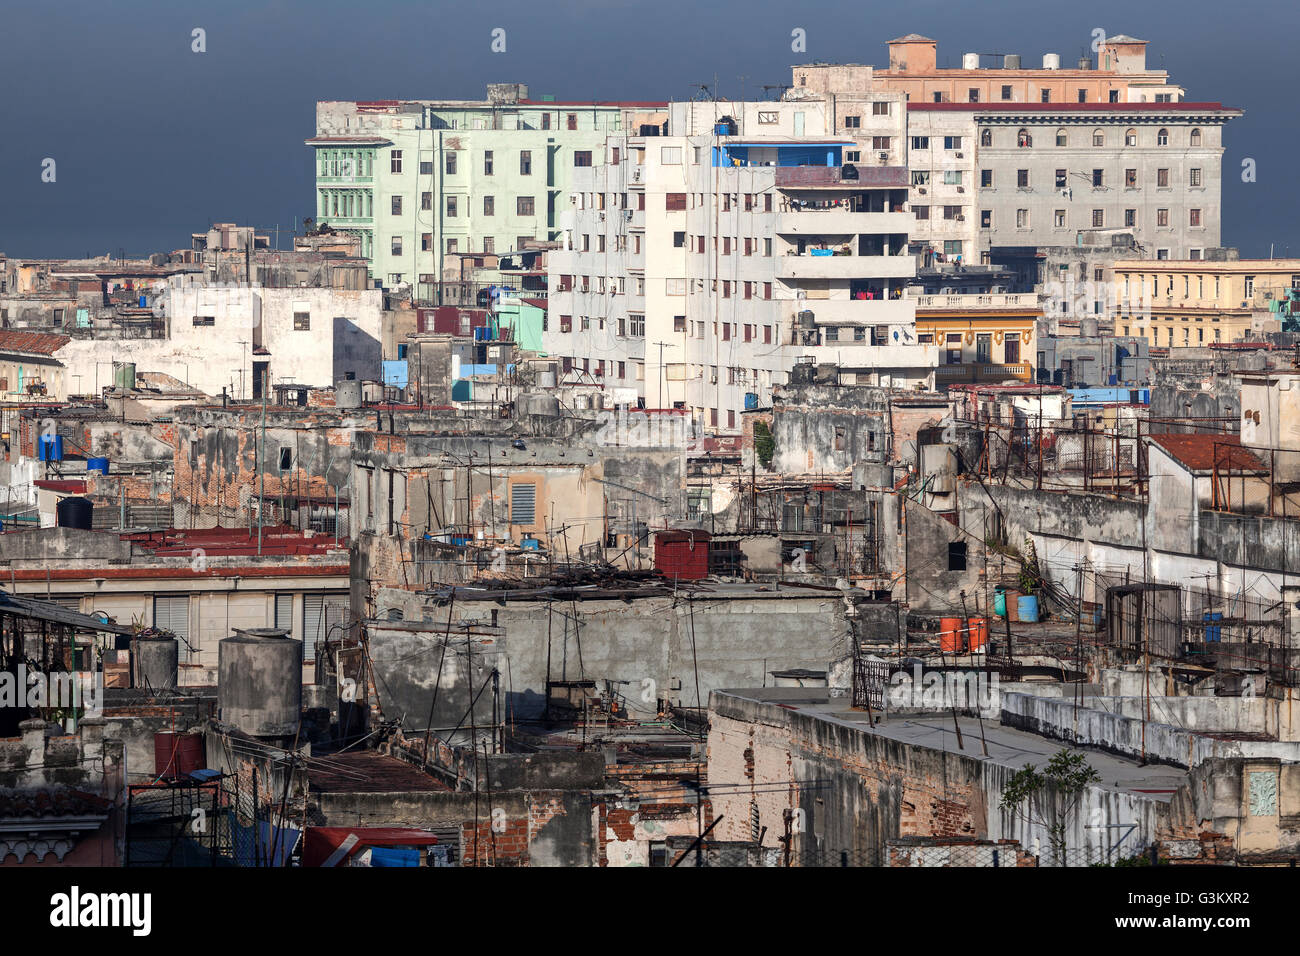 Vista de casas y techos en el centro de la ciudad, La Habana, Cuba Foto de stock